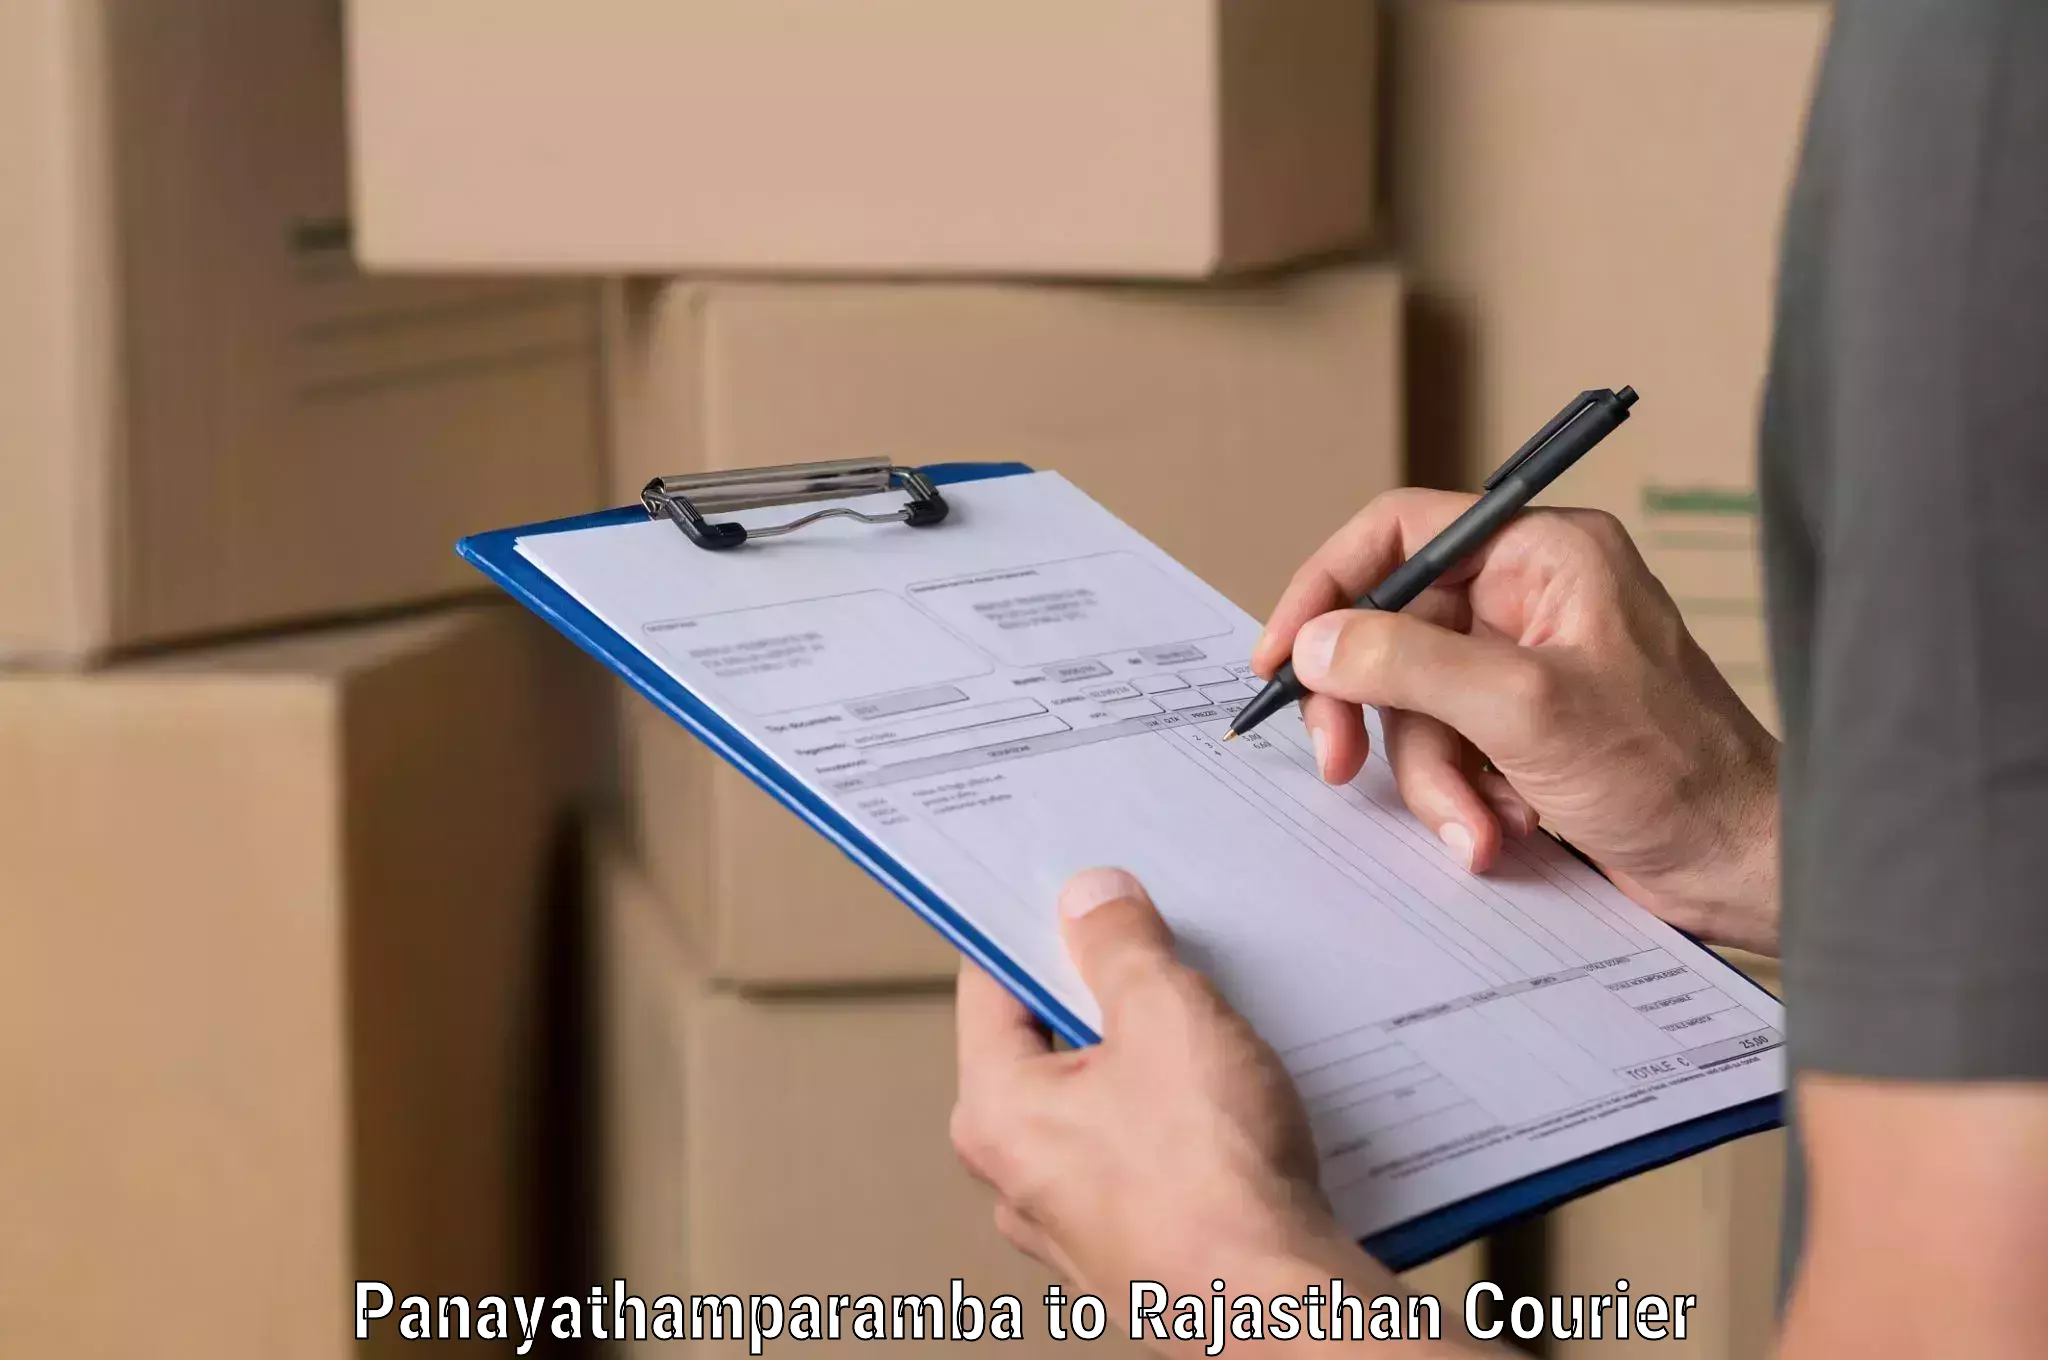 Smart shipping technology Panayathamparamba to Buhana